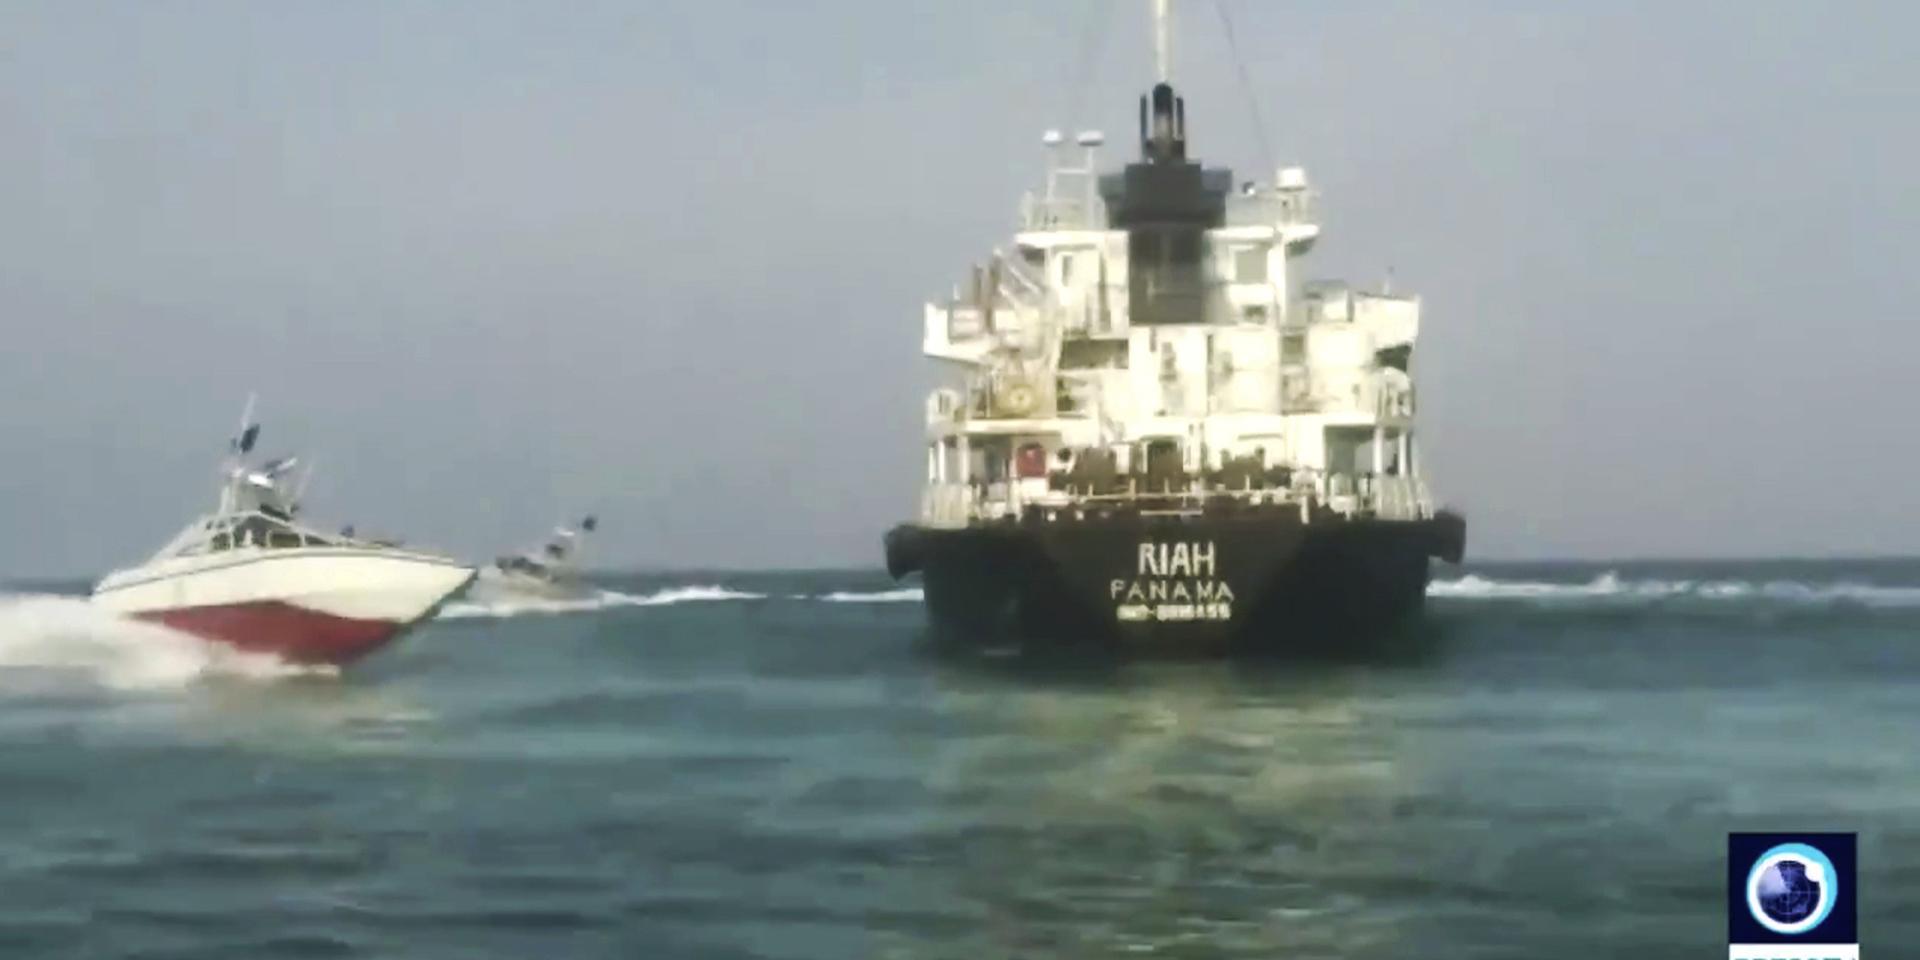 En bild publicerad i statlig iransk tv visar det beslagtagna fartyget.